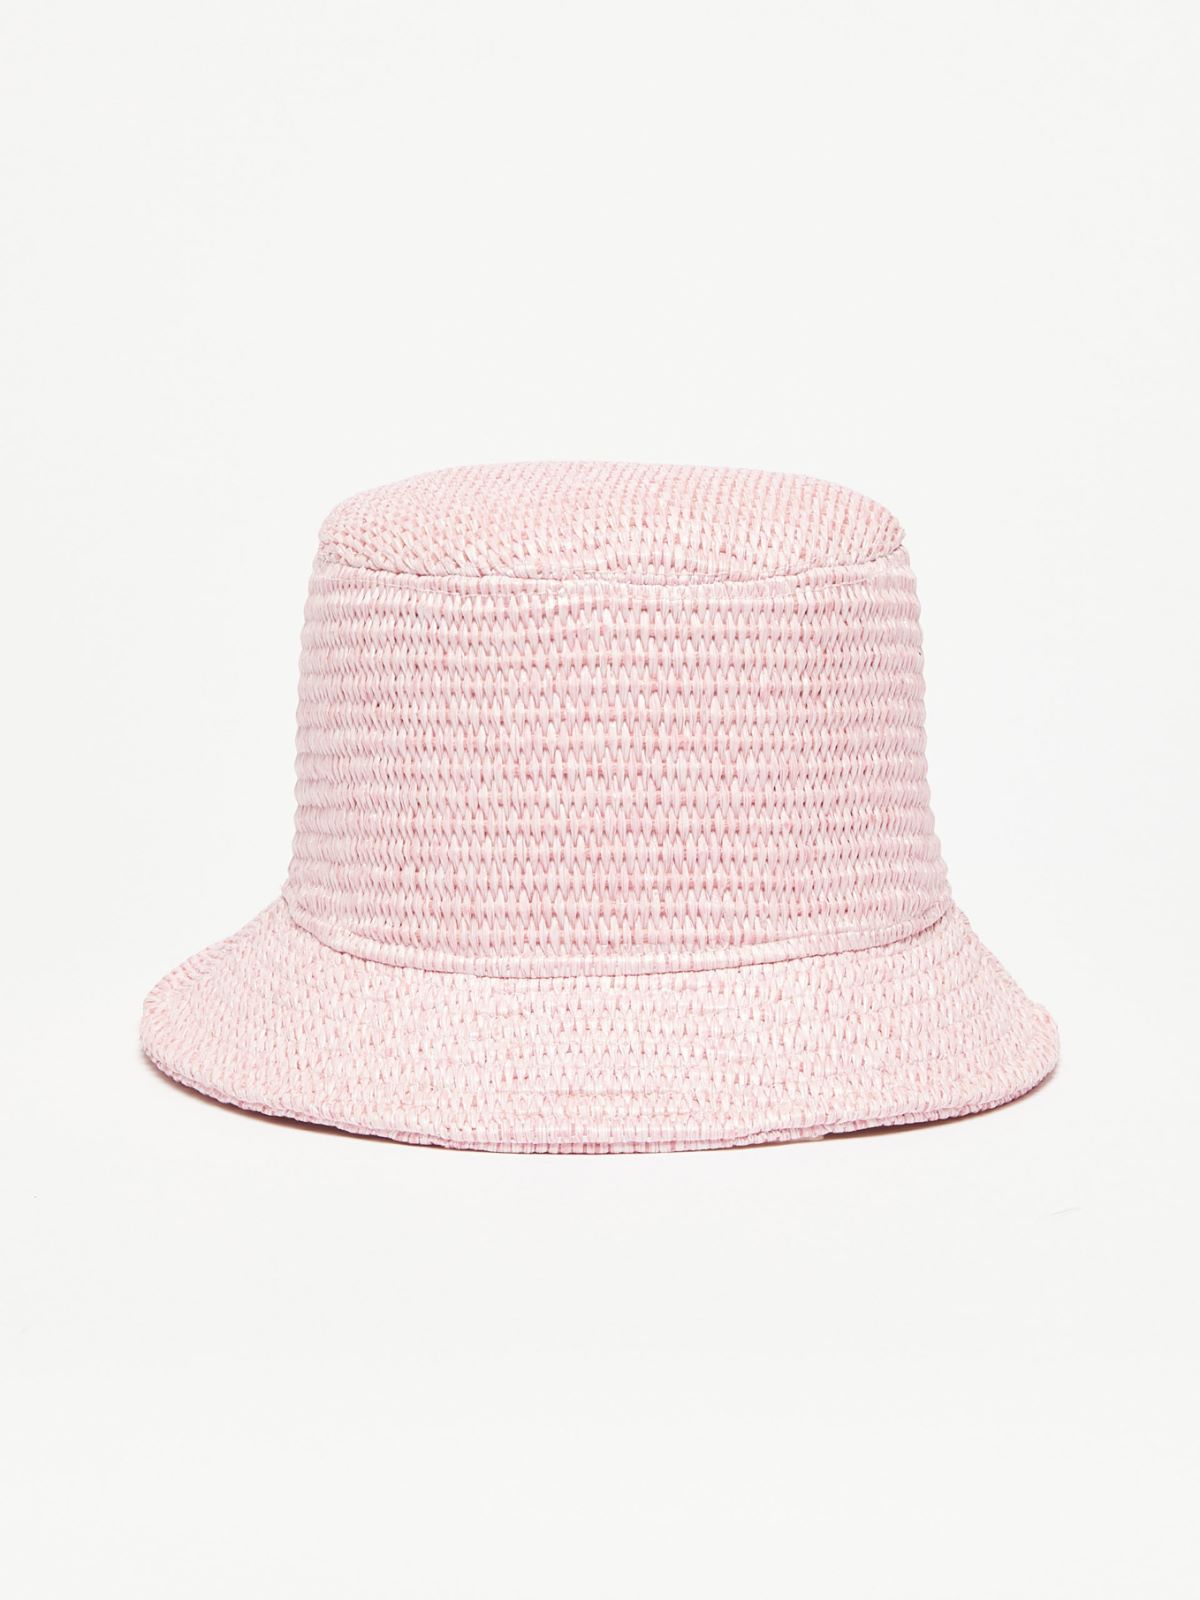 Cotton cloche hat - PINK - Weekend Max Mara